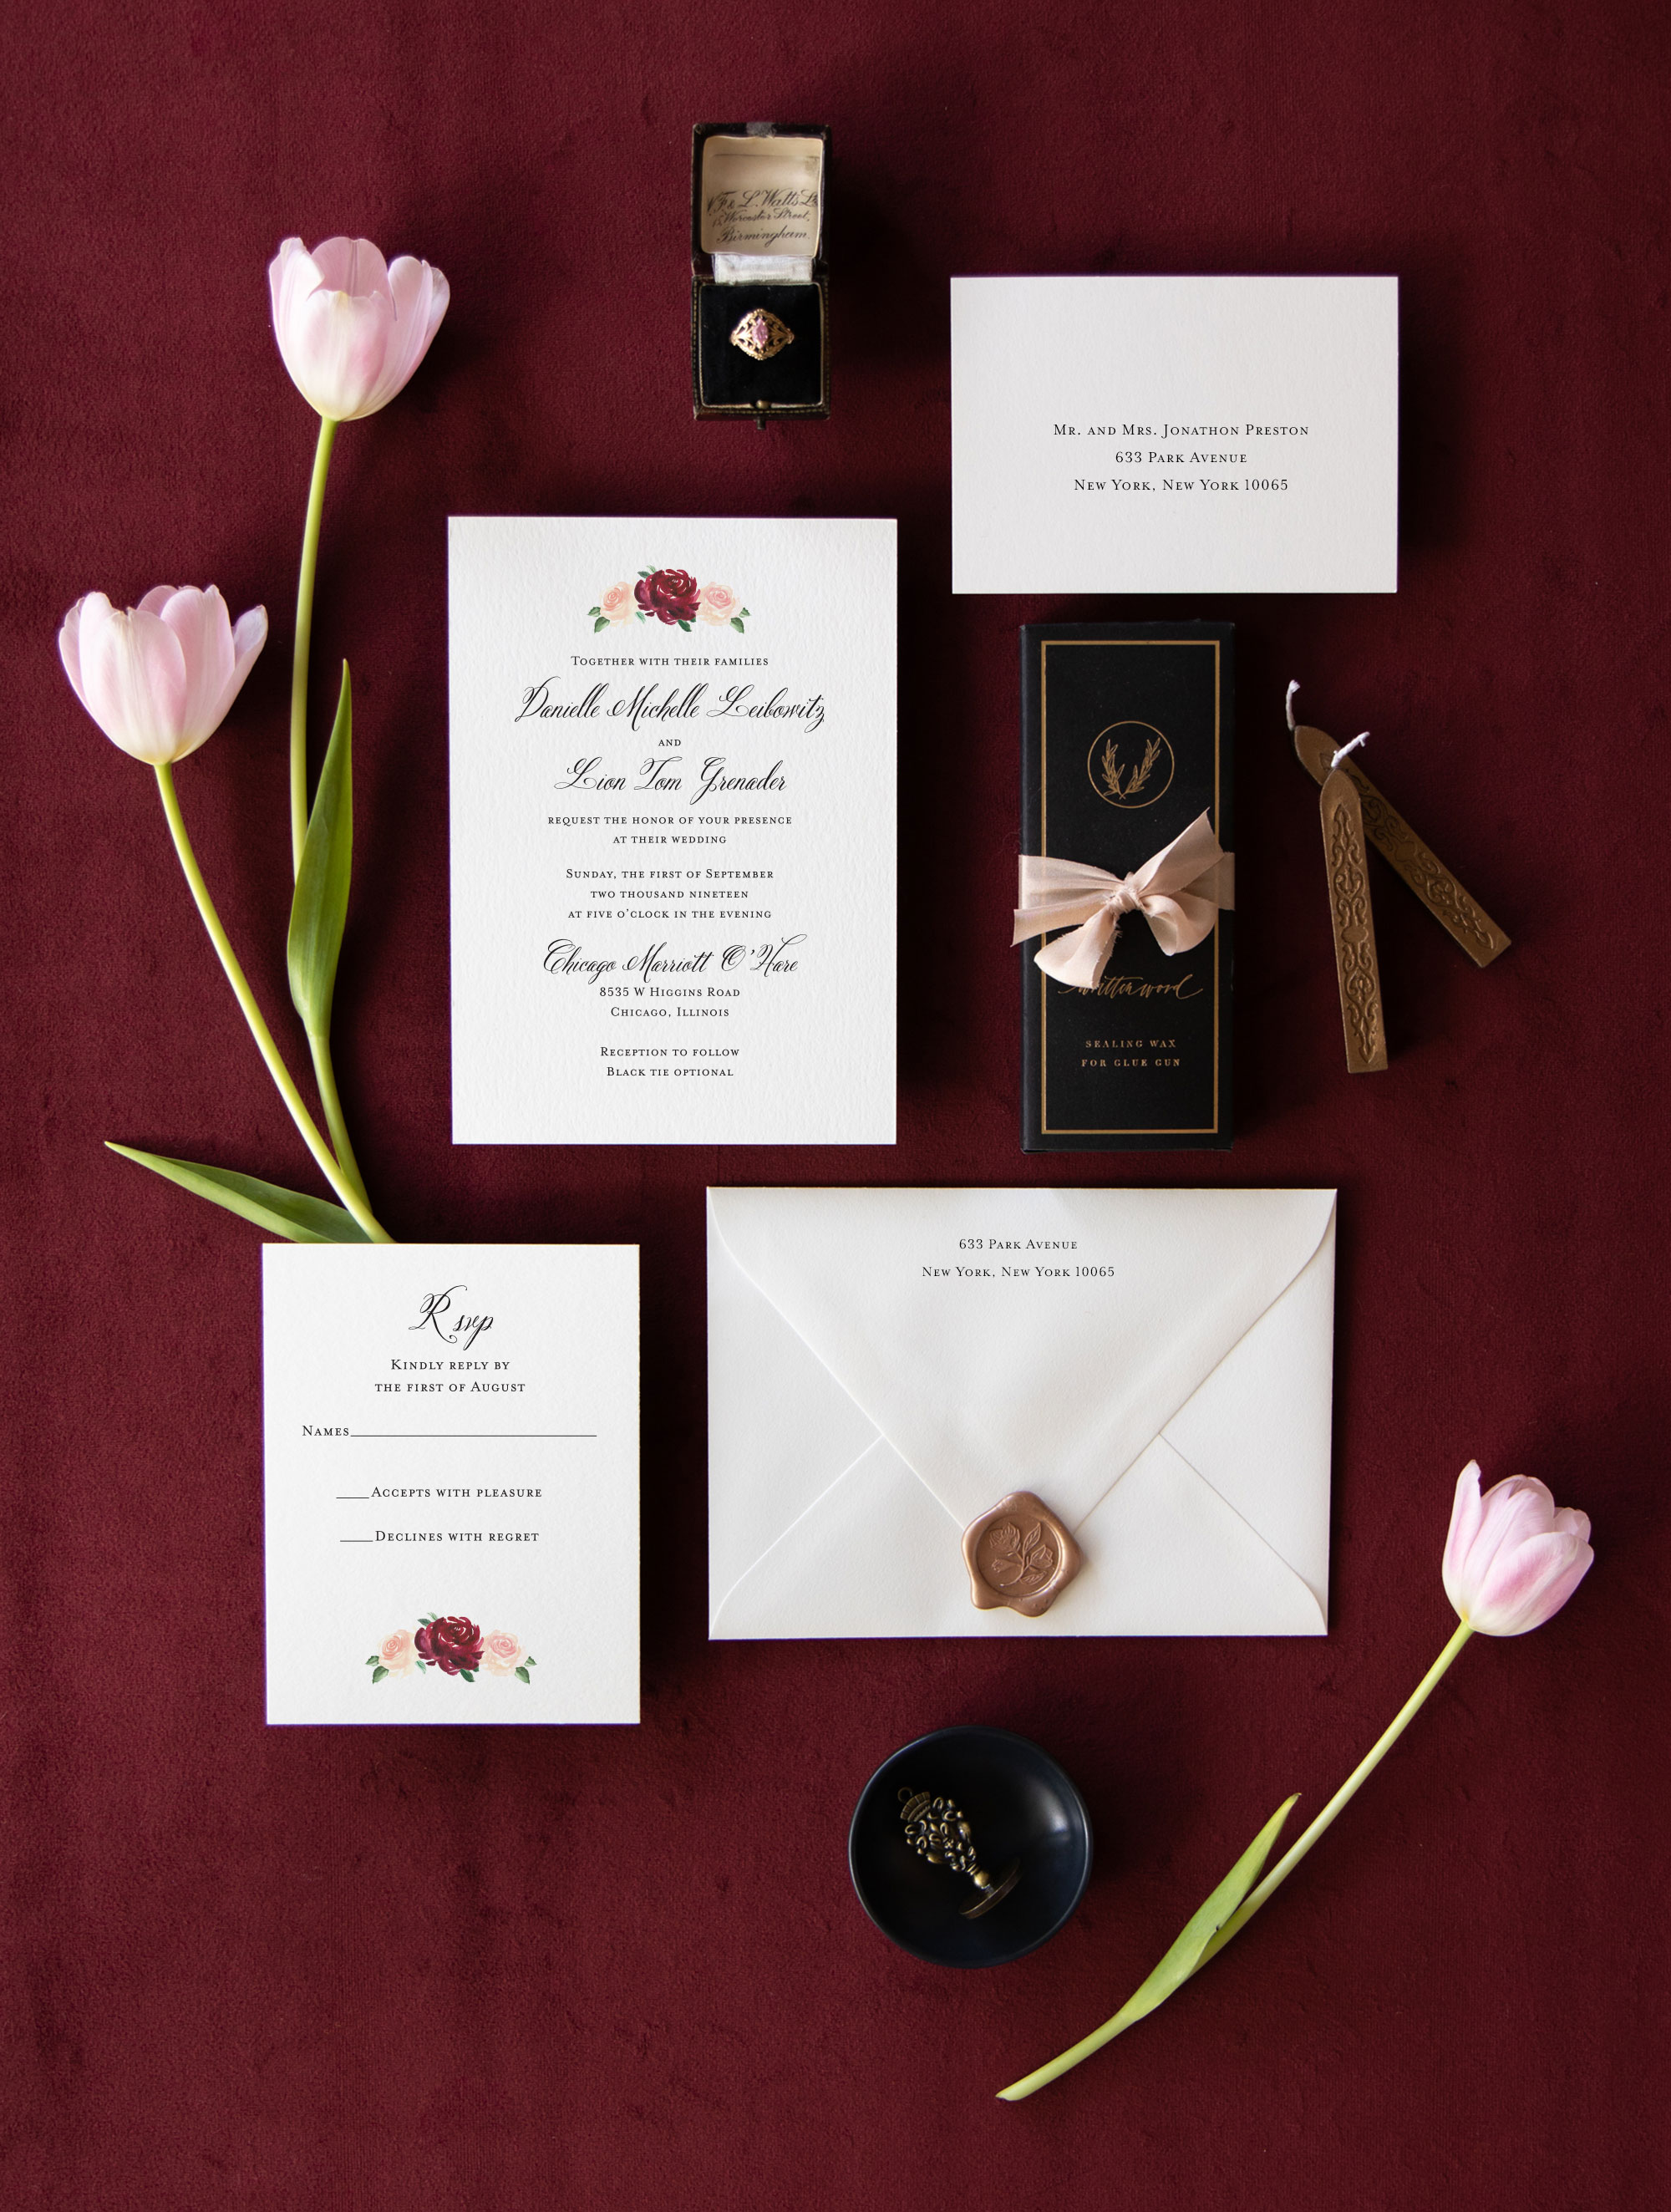 Custom Invitations Unique Wedding Invitations 100 Original Designs